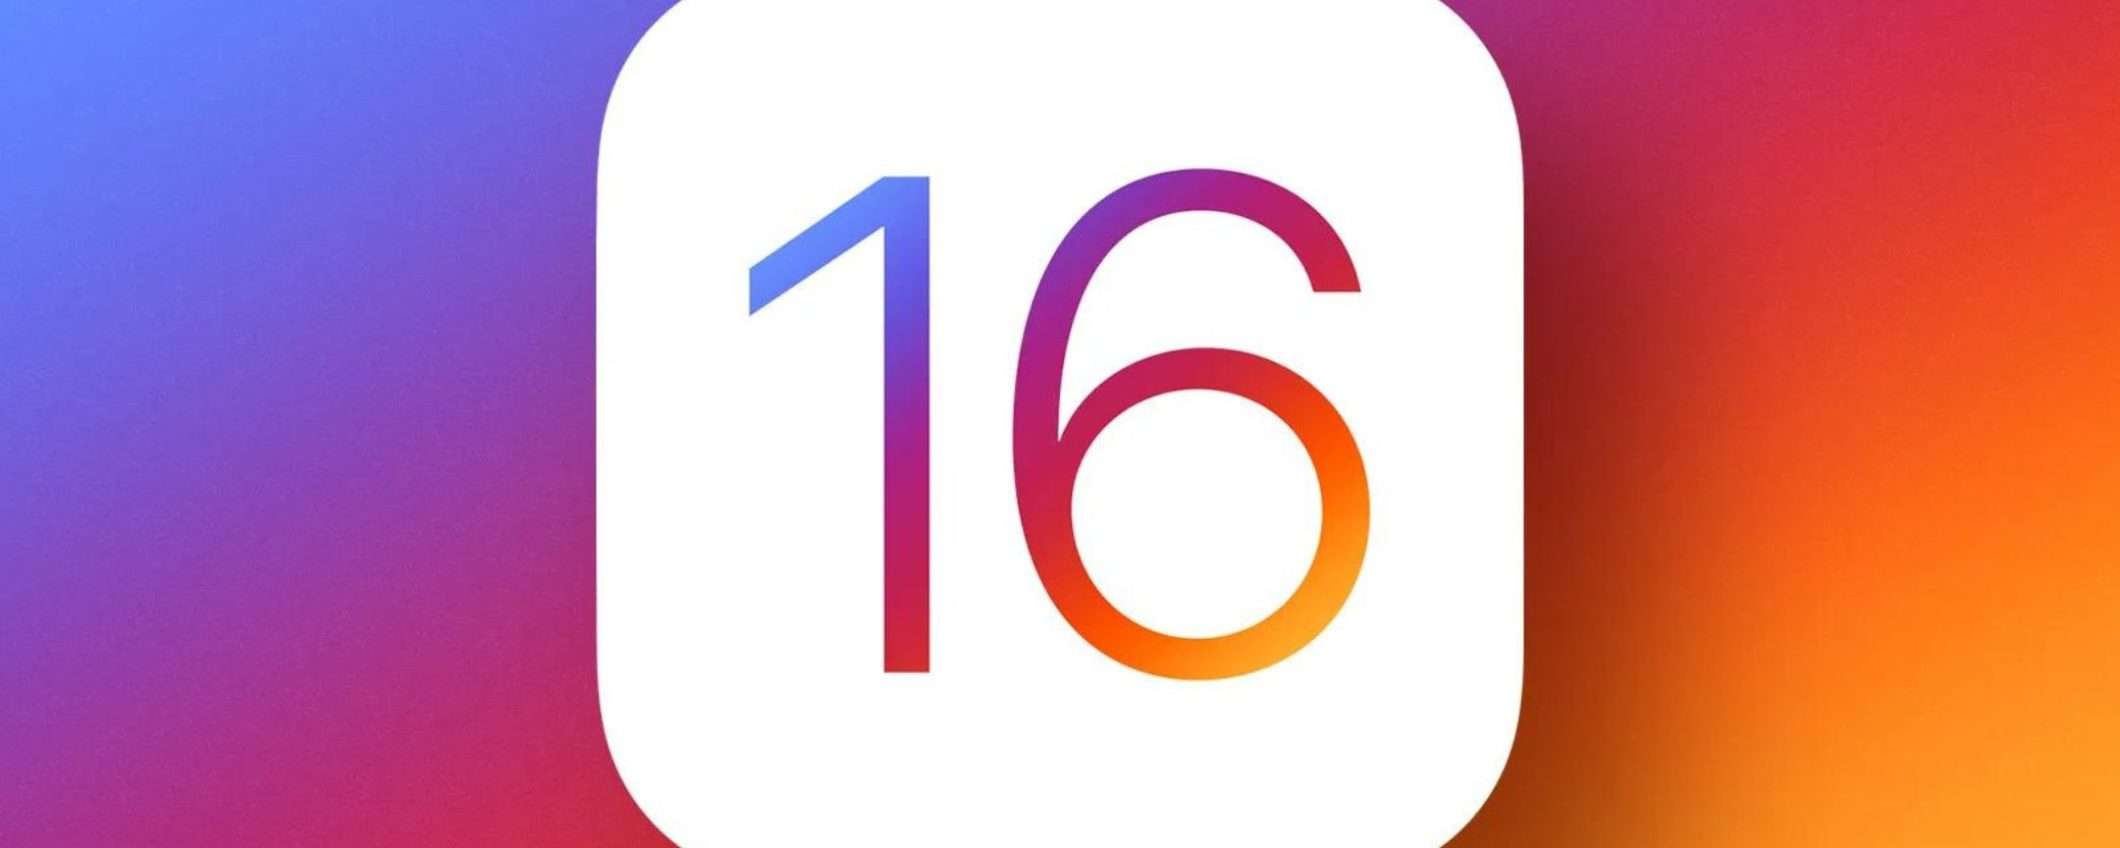 Tutti pazzi per iOS 16: adozione da RECORD per Apple